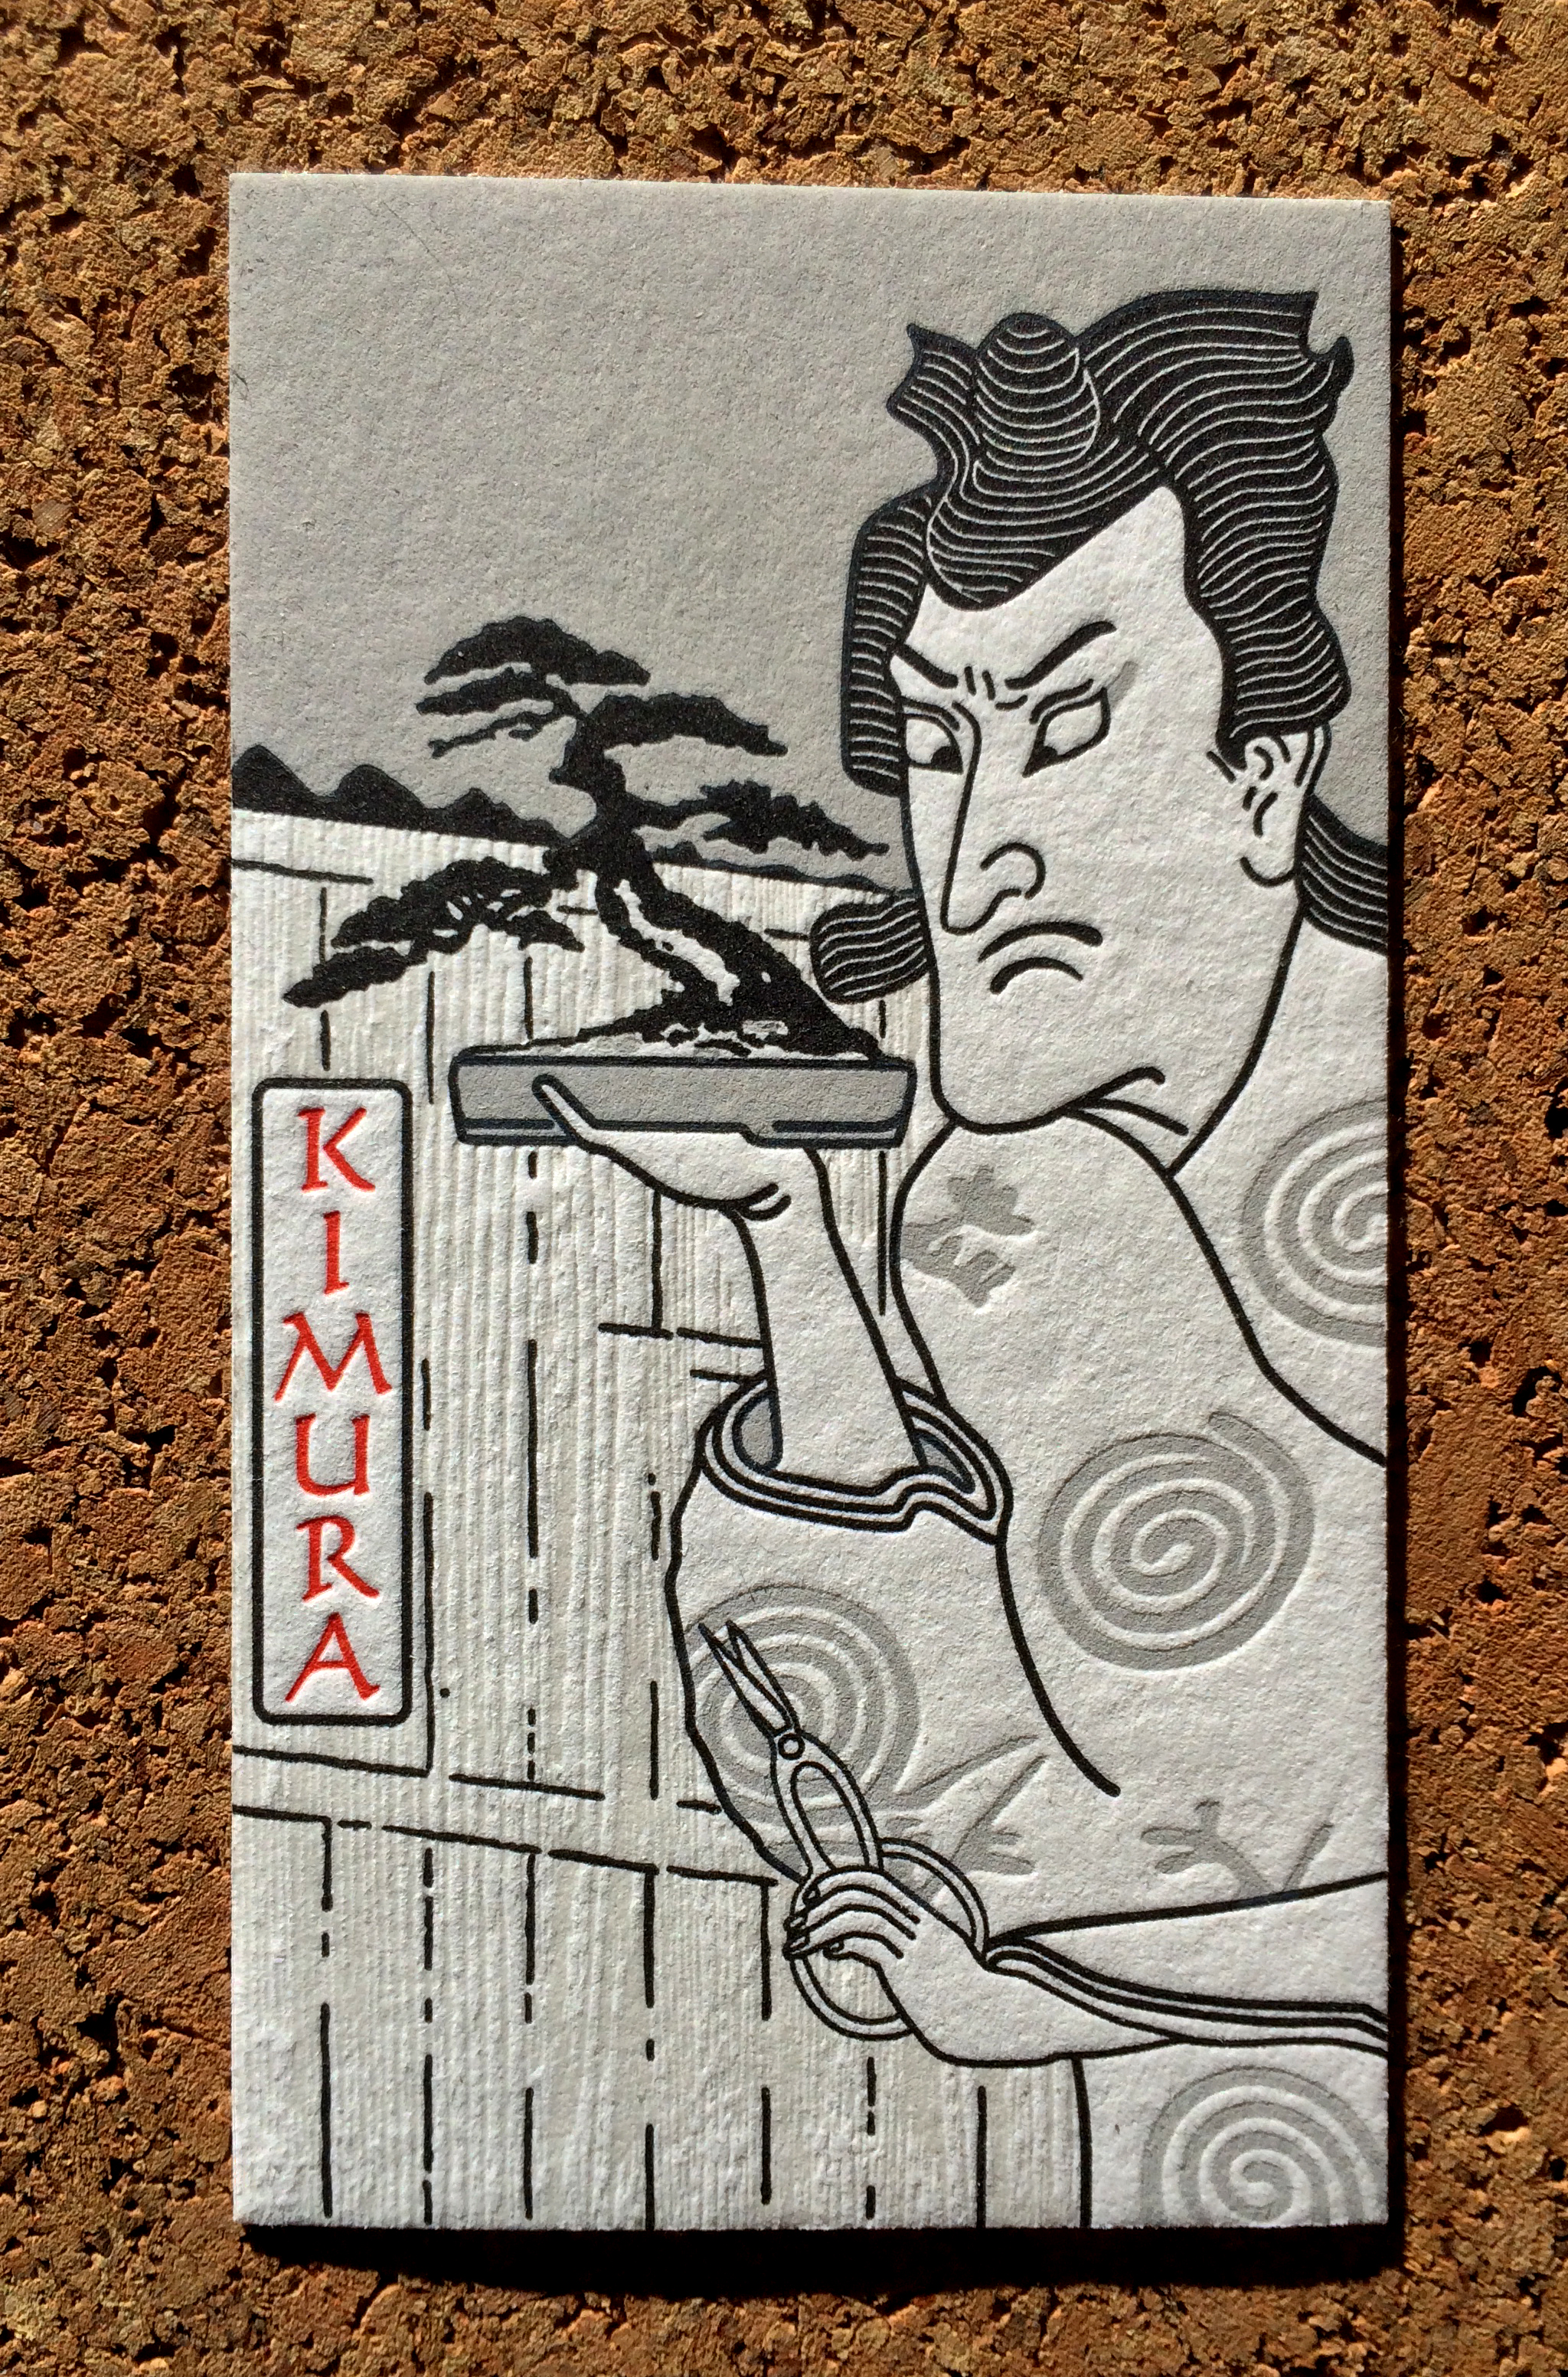 kimura.jpg